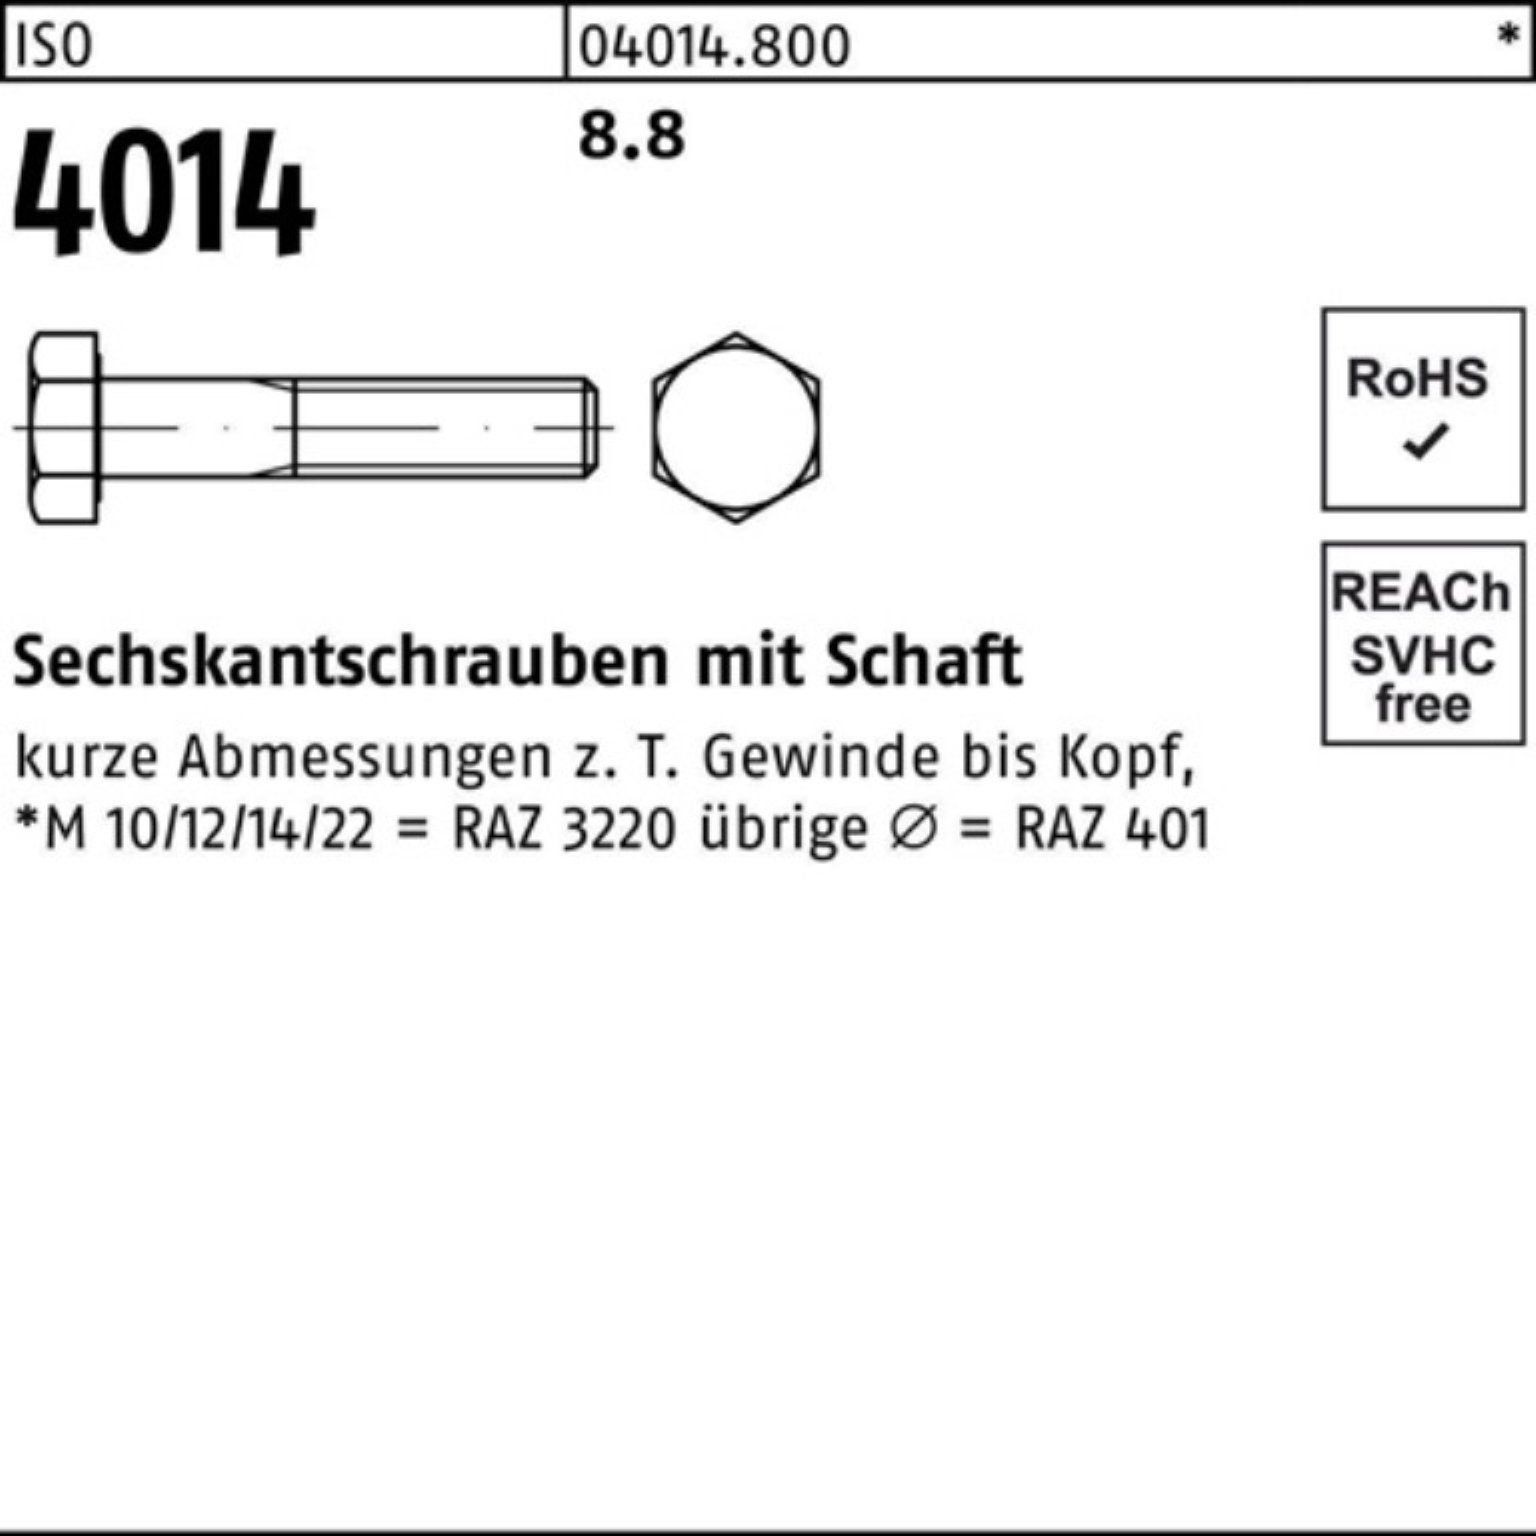 ISO 100 Sechskantschraube 100er M8x 4014 Pack Sechskantschraube IS Schaft Bufab 8.8 Stück 250